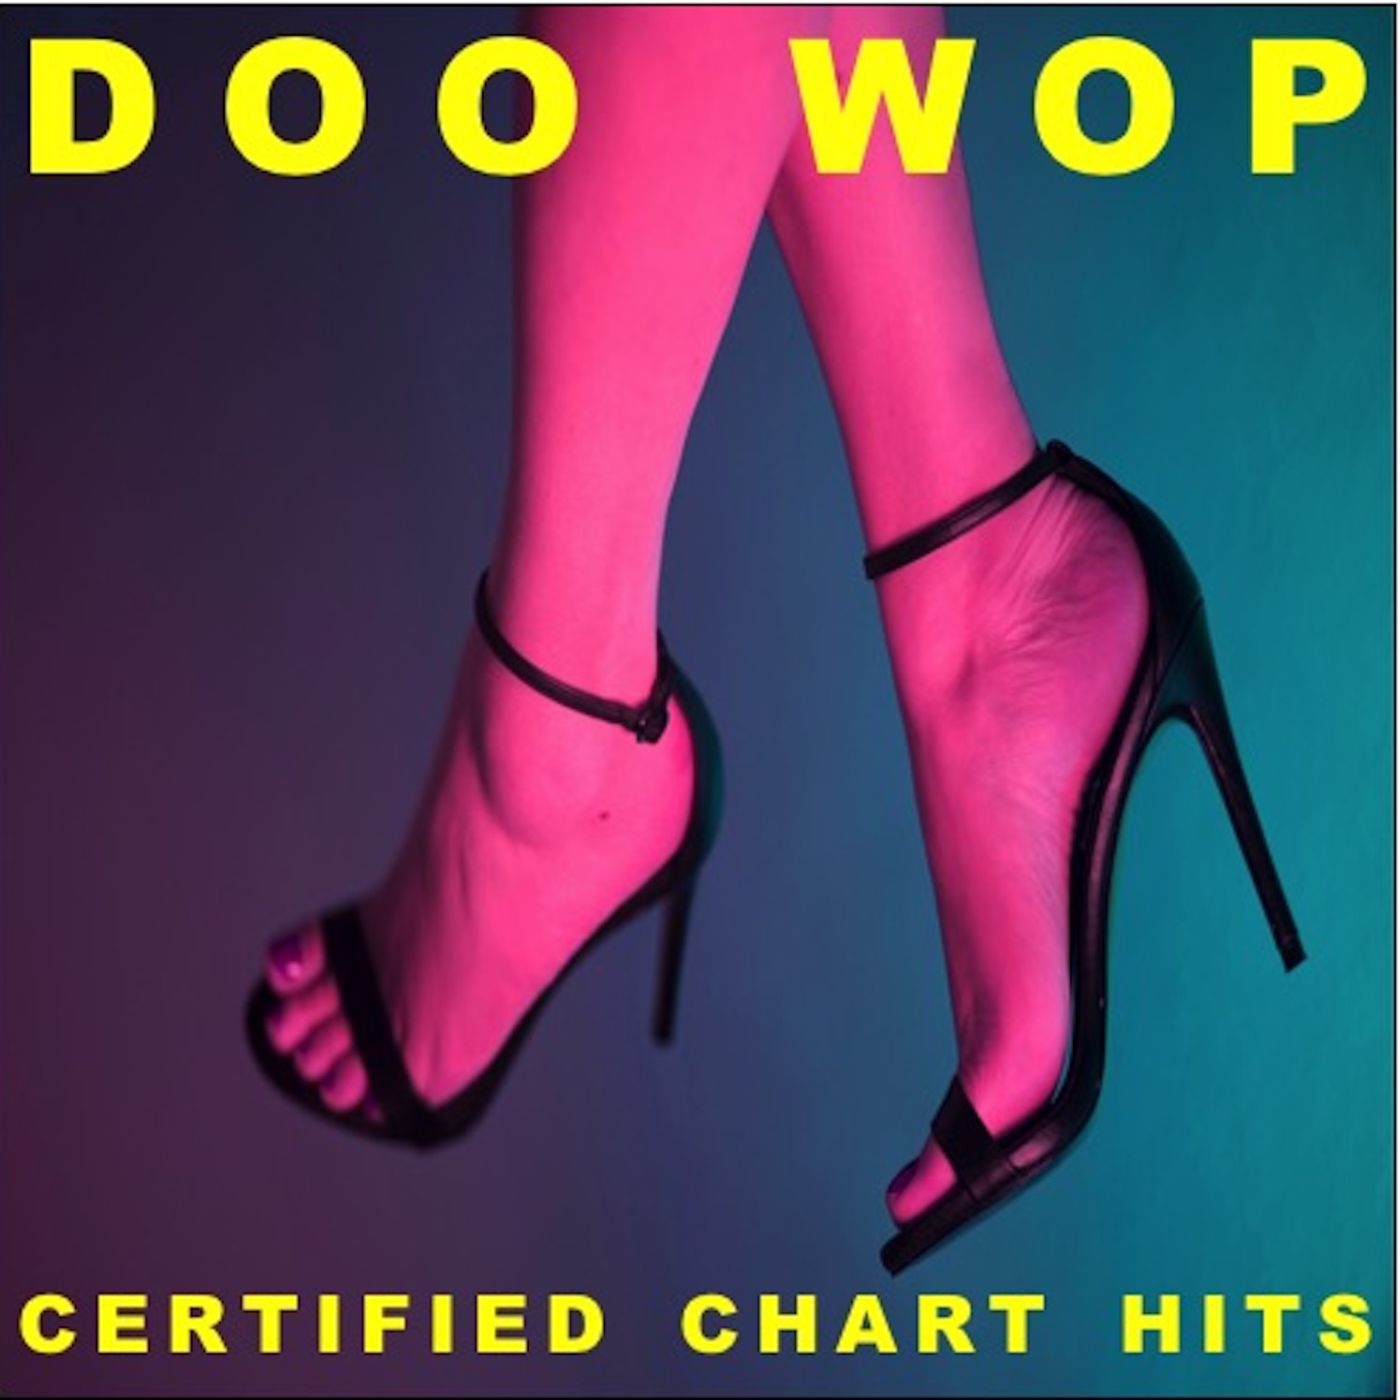 Doo Wop Certified Chart Hits!